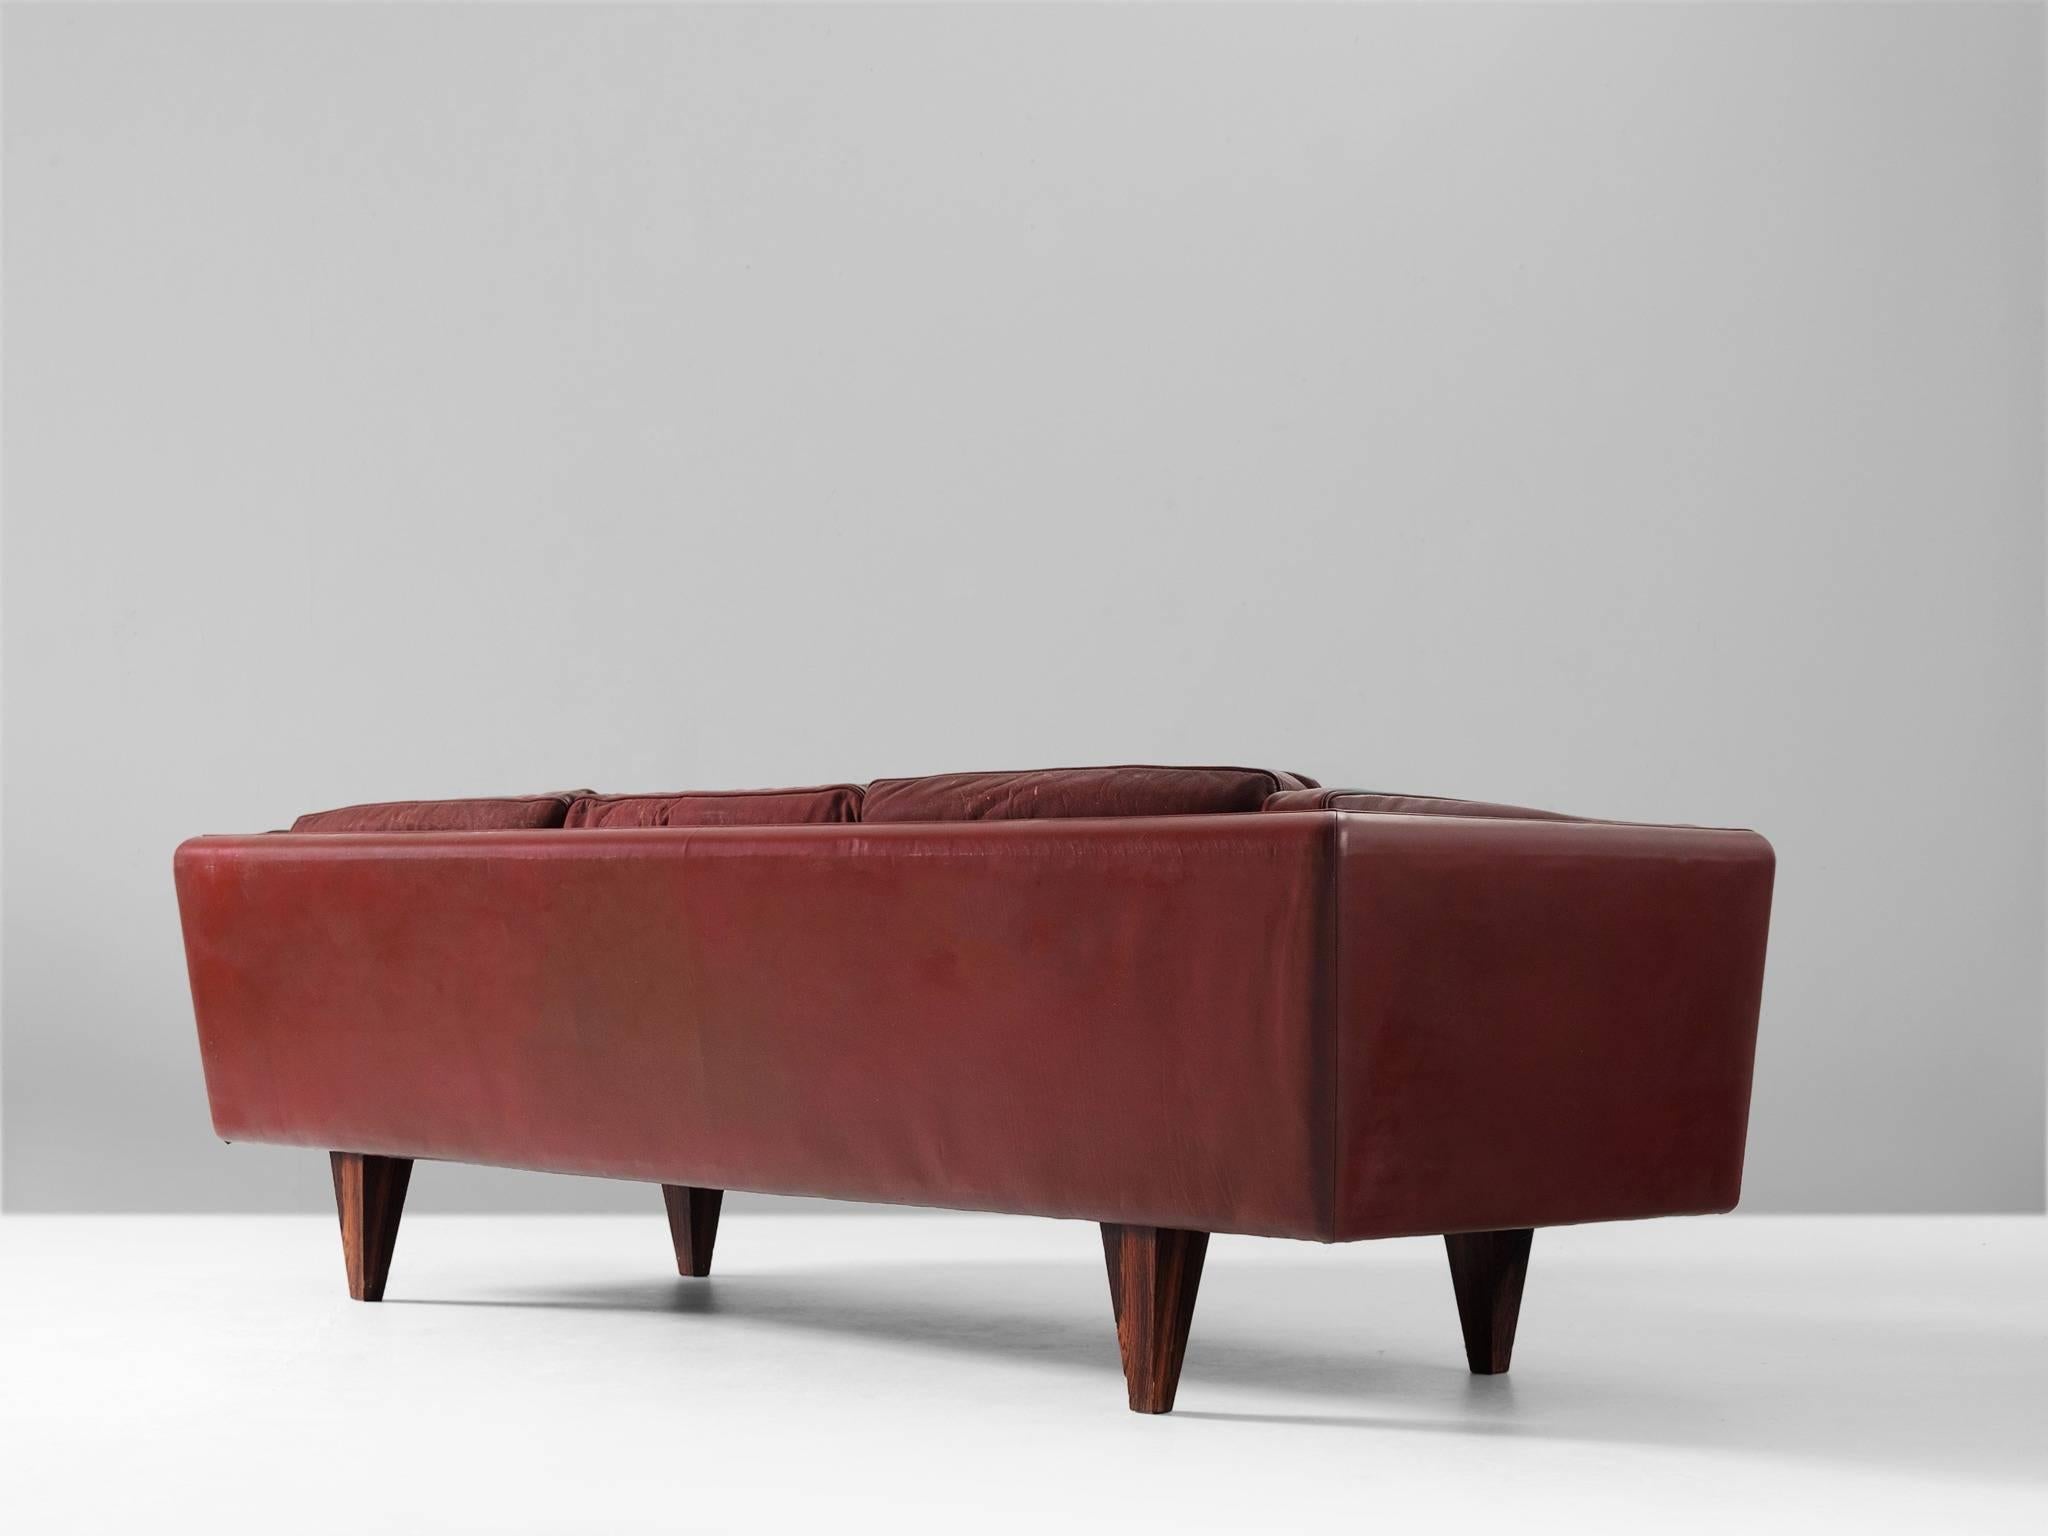 Danish Illum Wikkelsø Fully Restored Sofa in Burgundy Red Leather